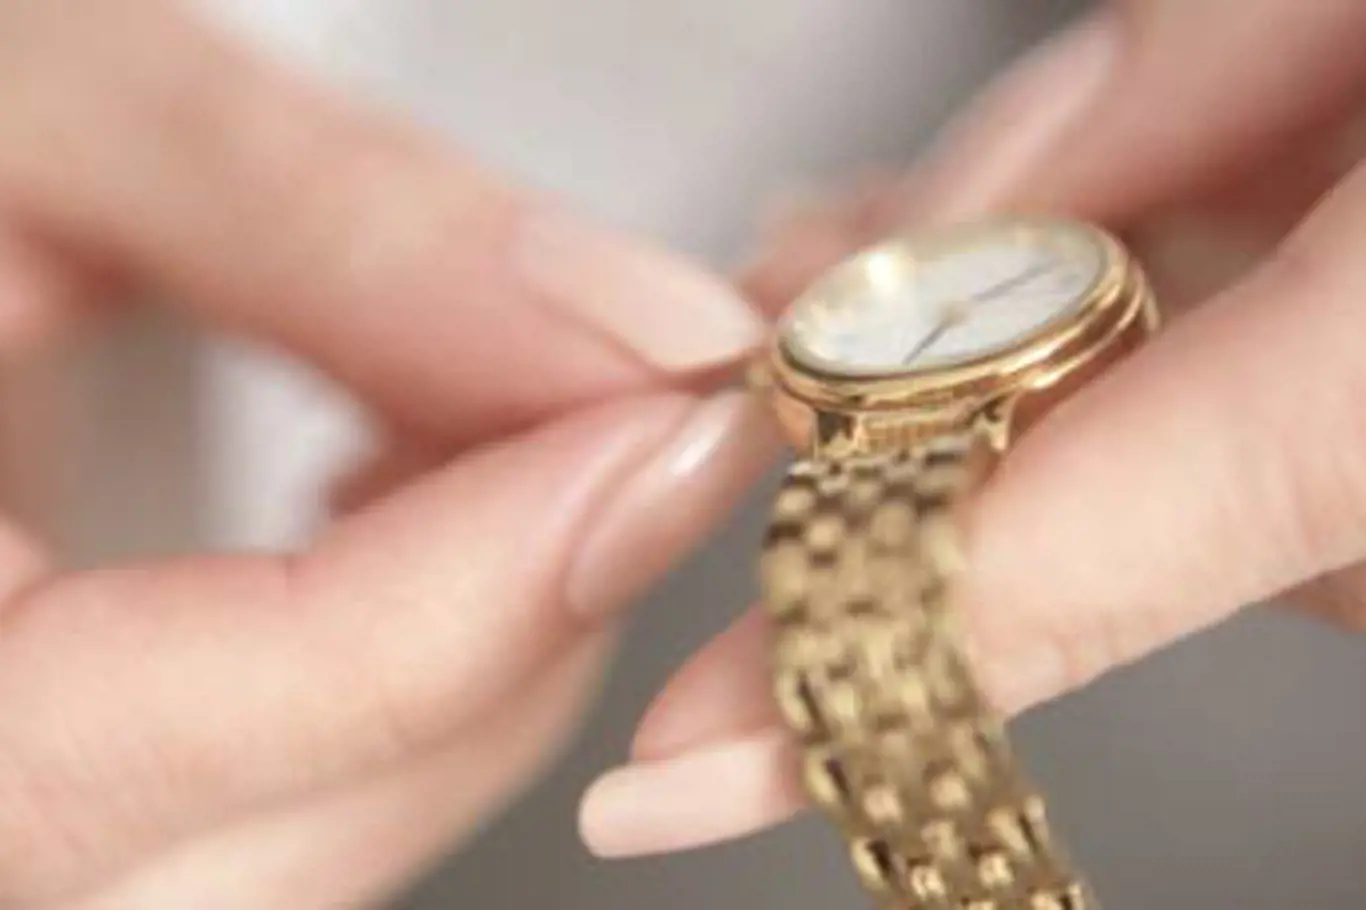 Ženy při nákupu hodinek věnují pozornost především jejich designu a provedení.